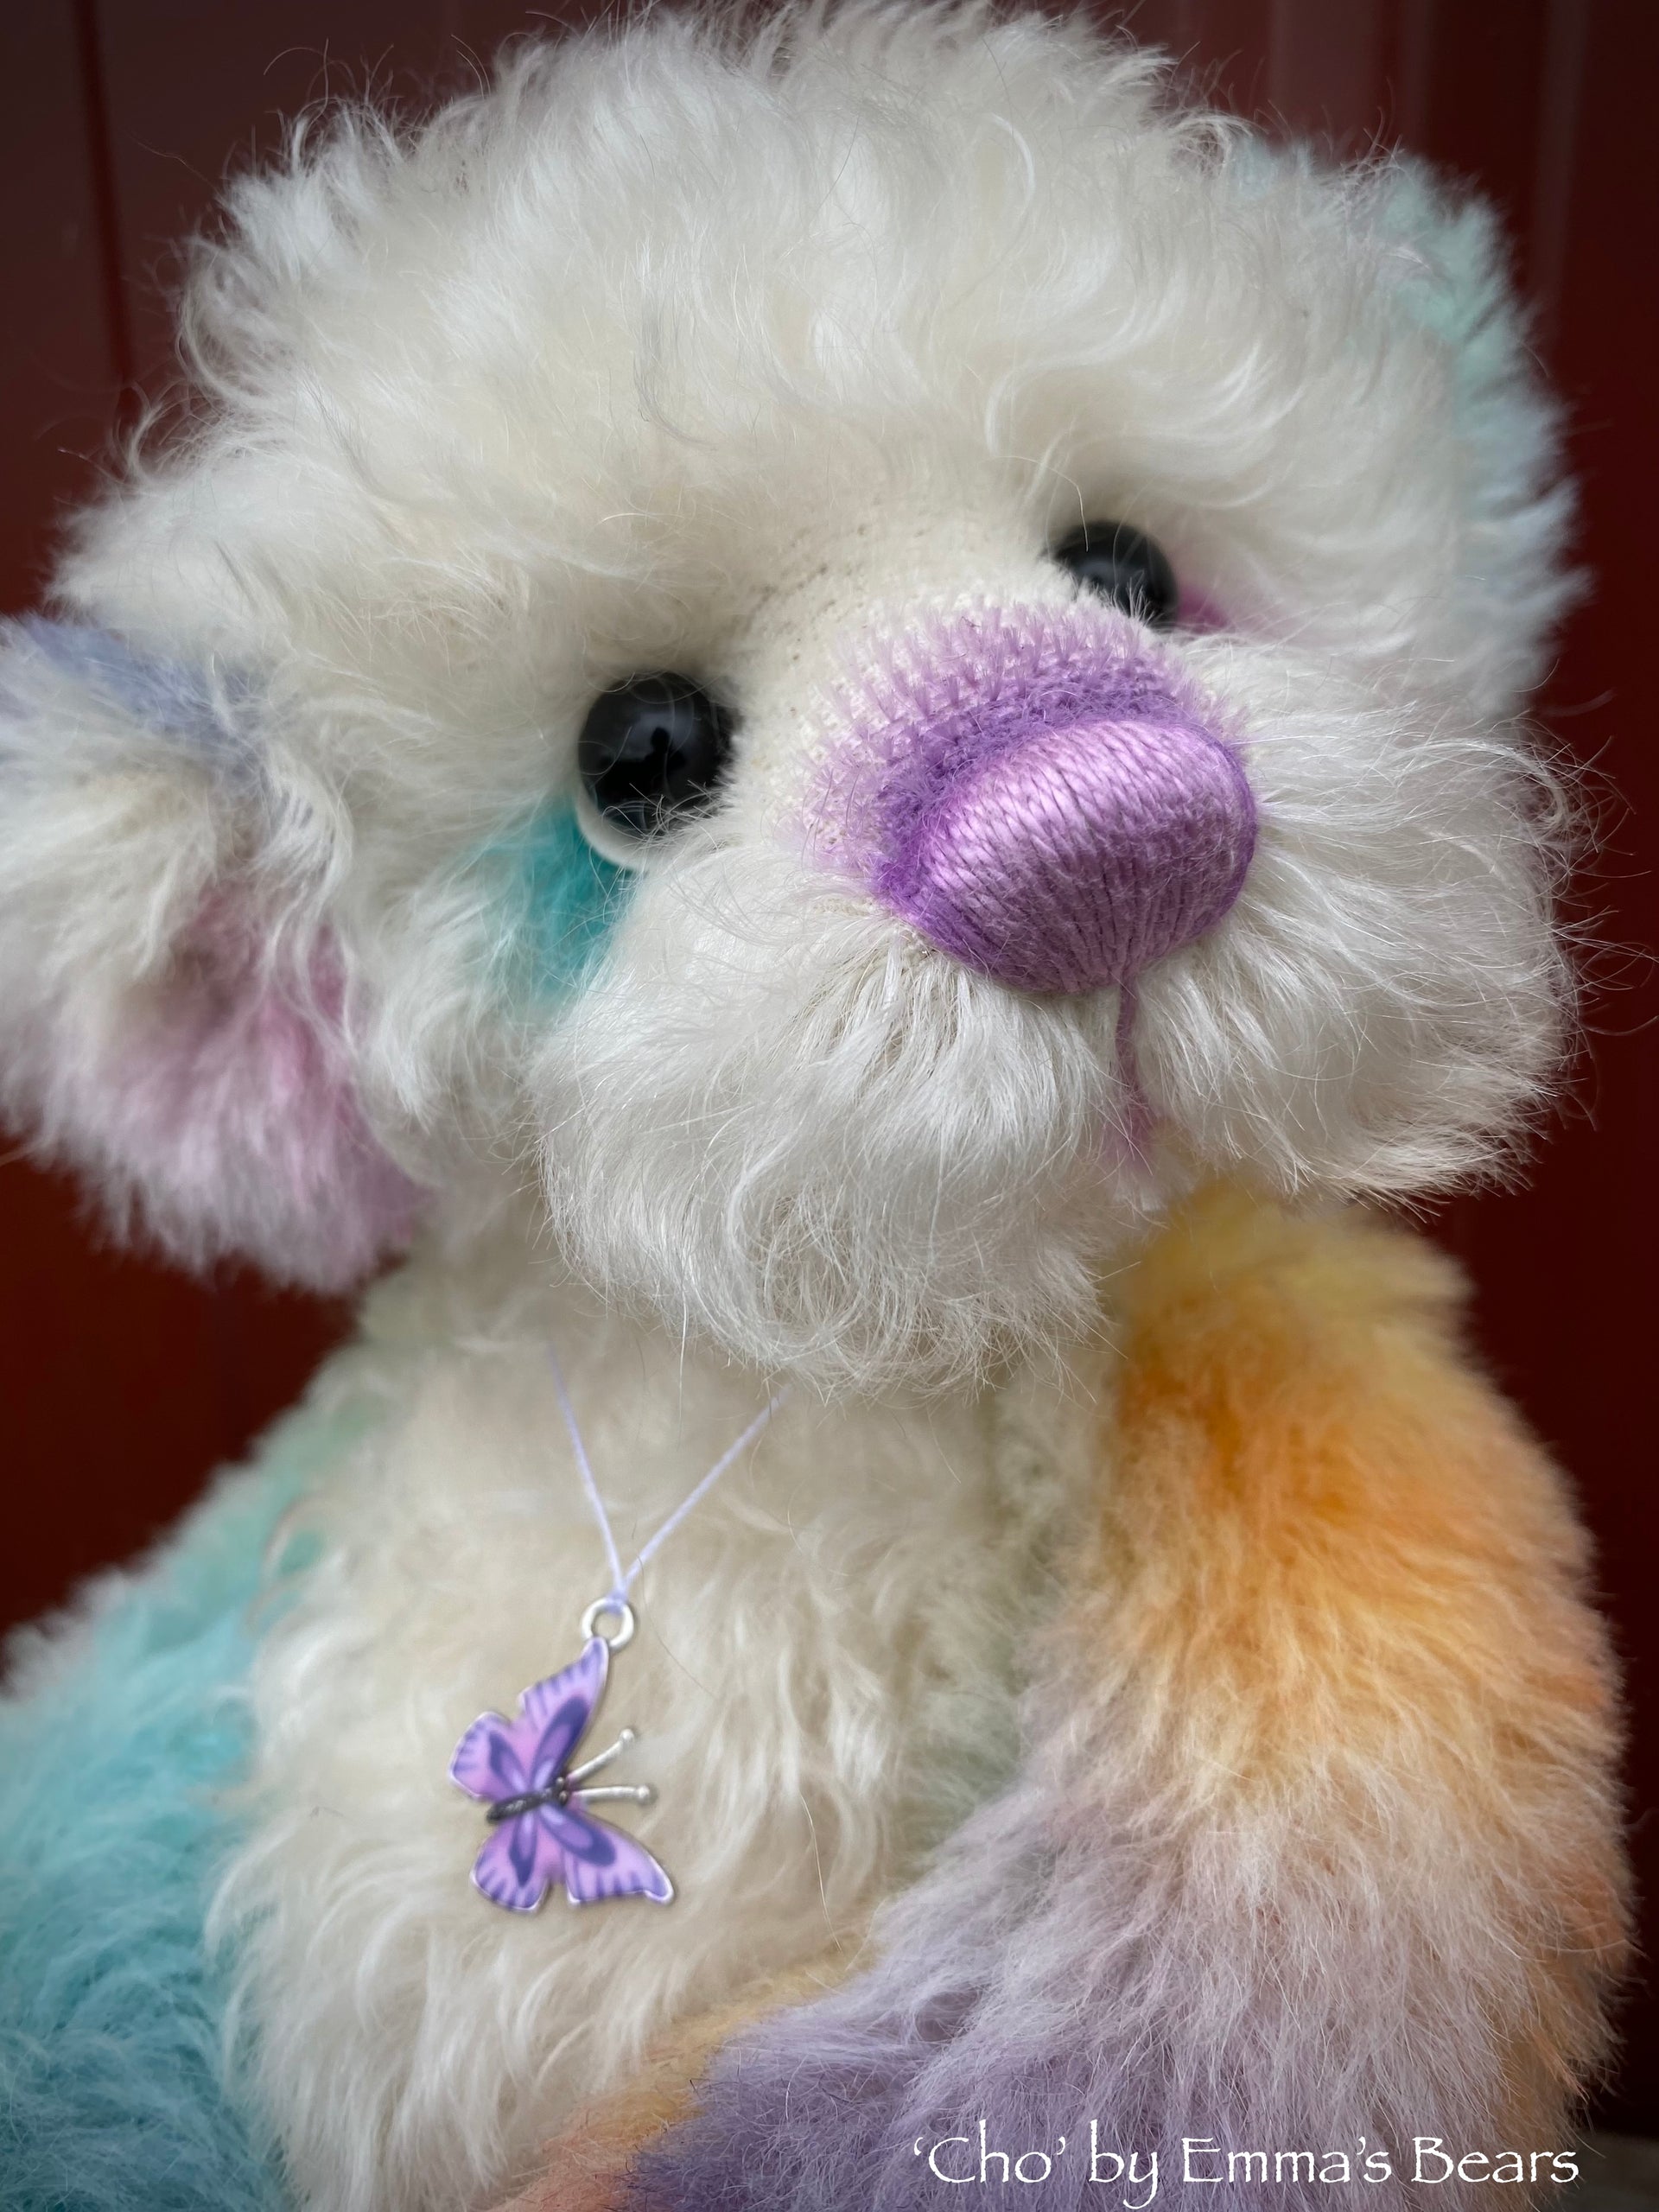 Cho - 12" Hand Dyed Rainbow Alpaca and Mohair Artist Bear by Emma's Bears - OOAK